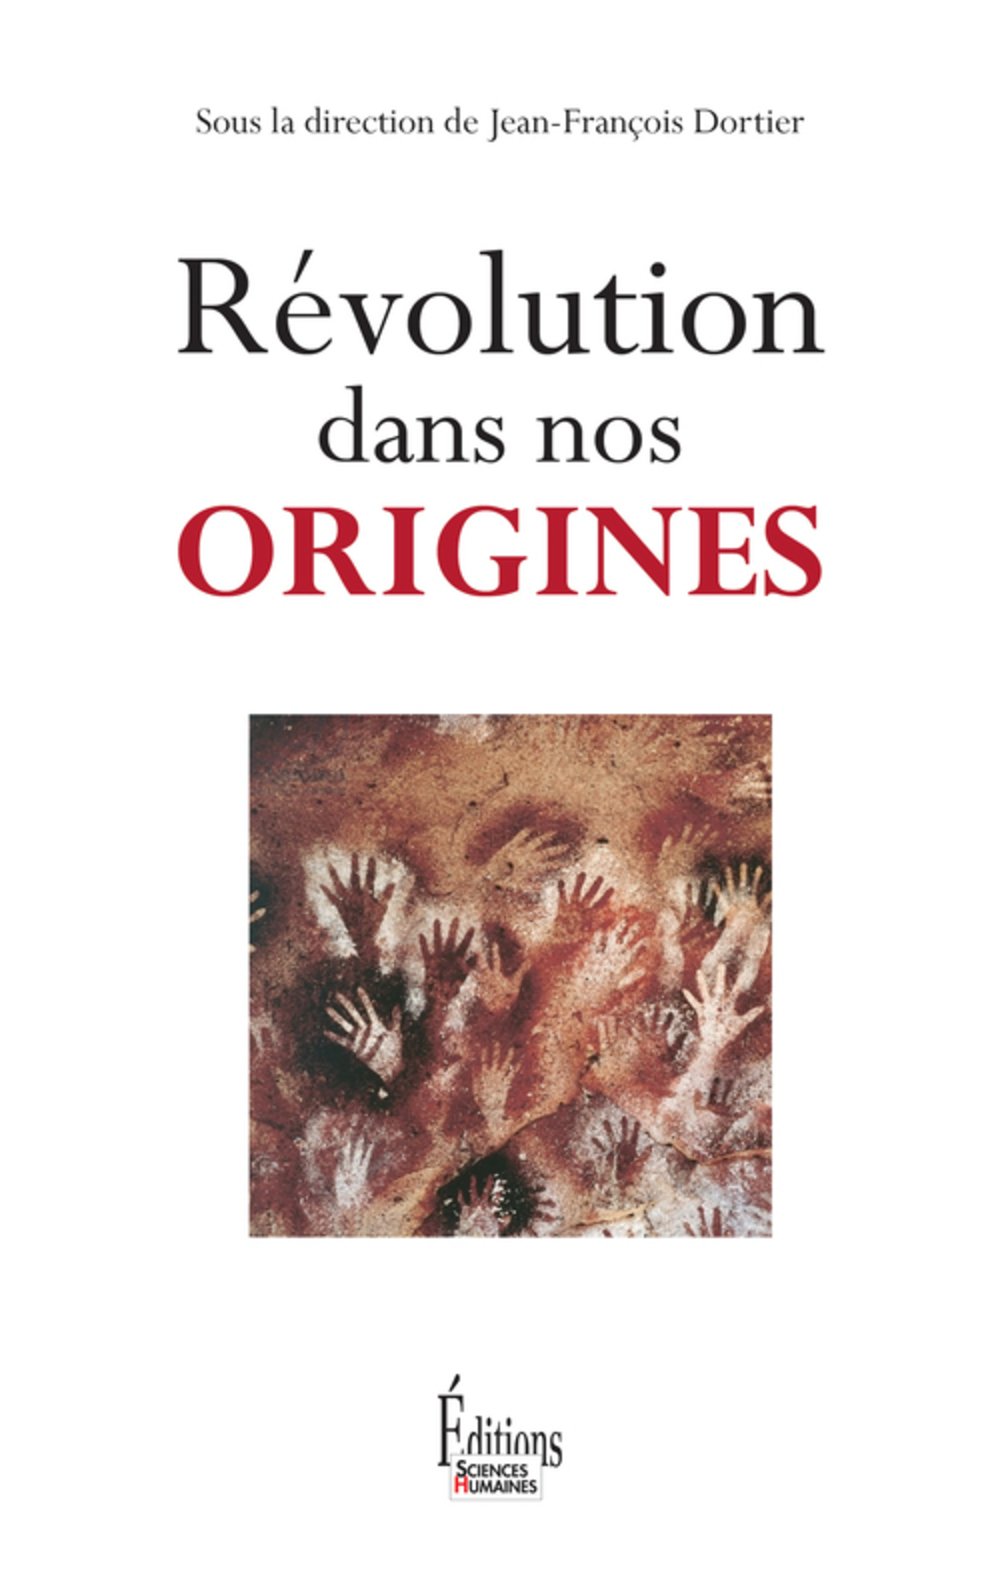 Révolution dans nos origines, 2015, 411 p.